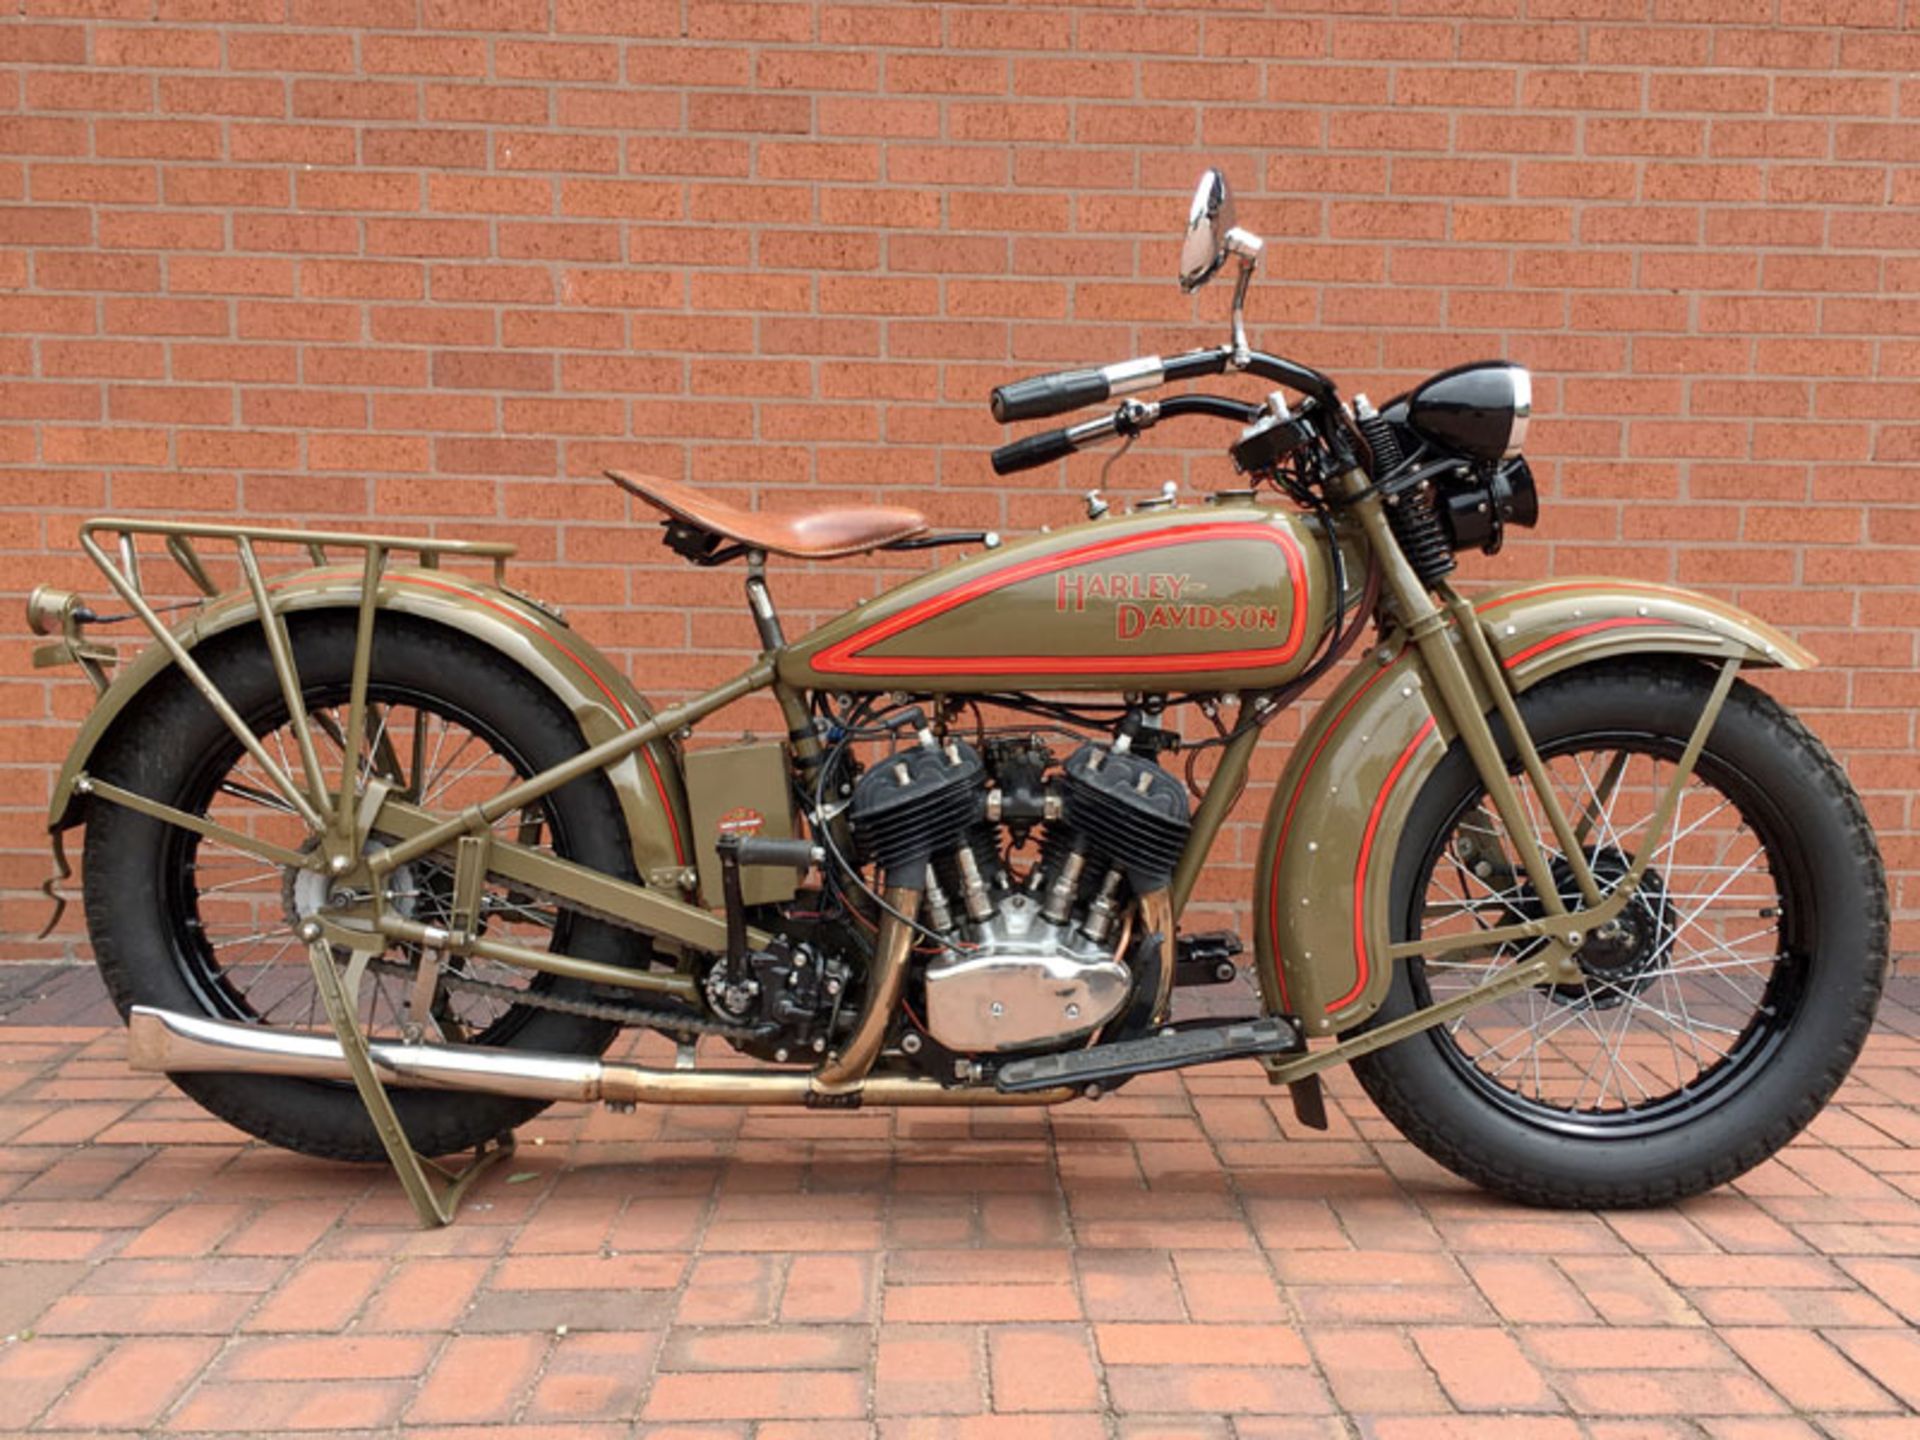 1929 Harley Davidson Model D